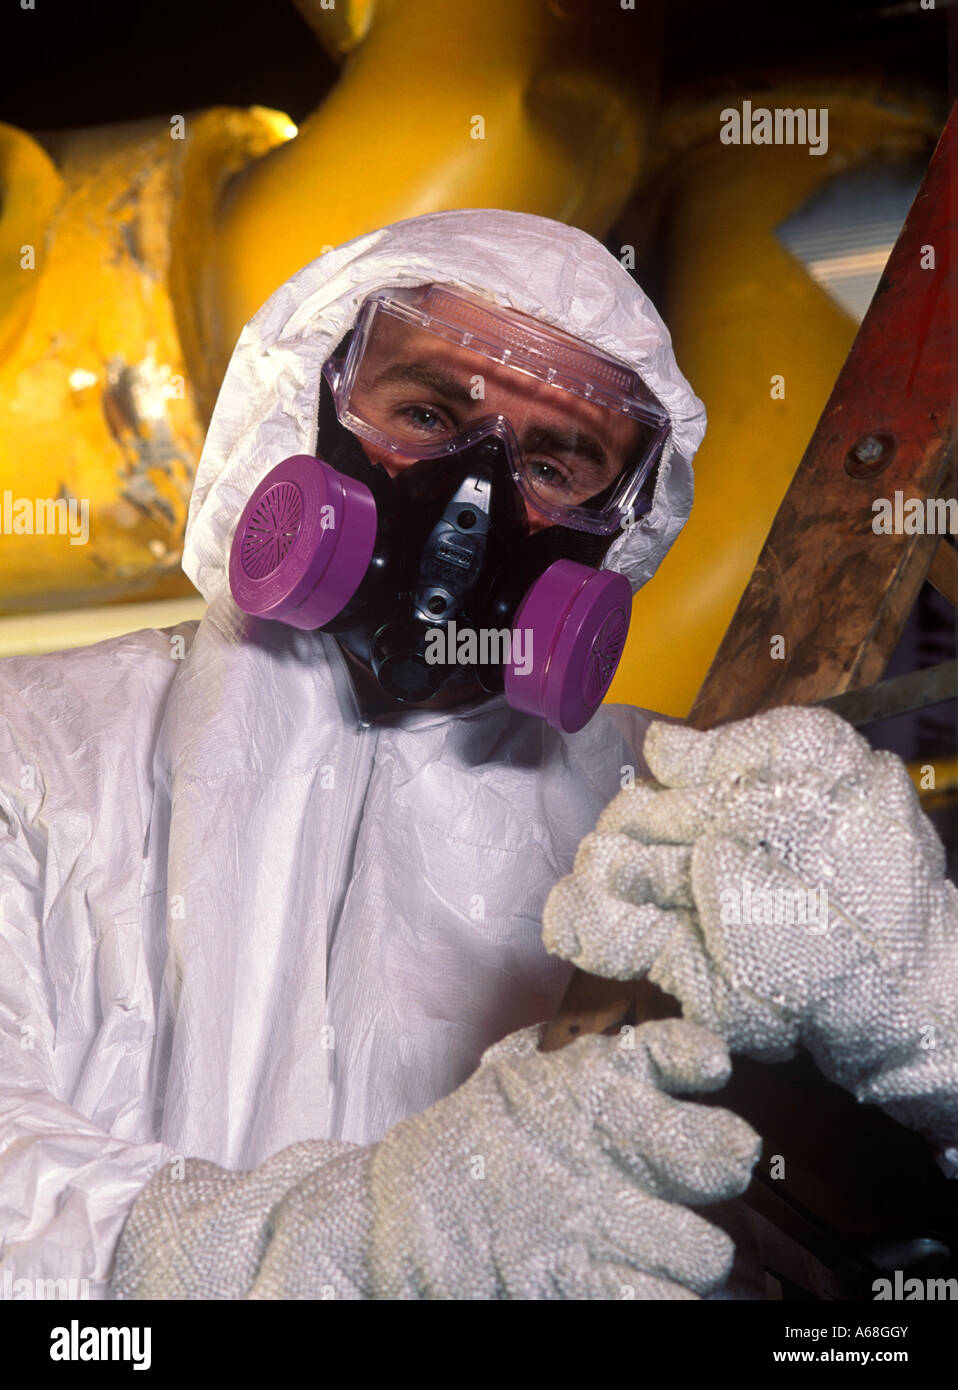 Rimozione amianto lavoratore con tuta protettiva e maschera in un sito industriale Foto Stock